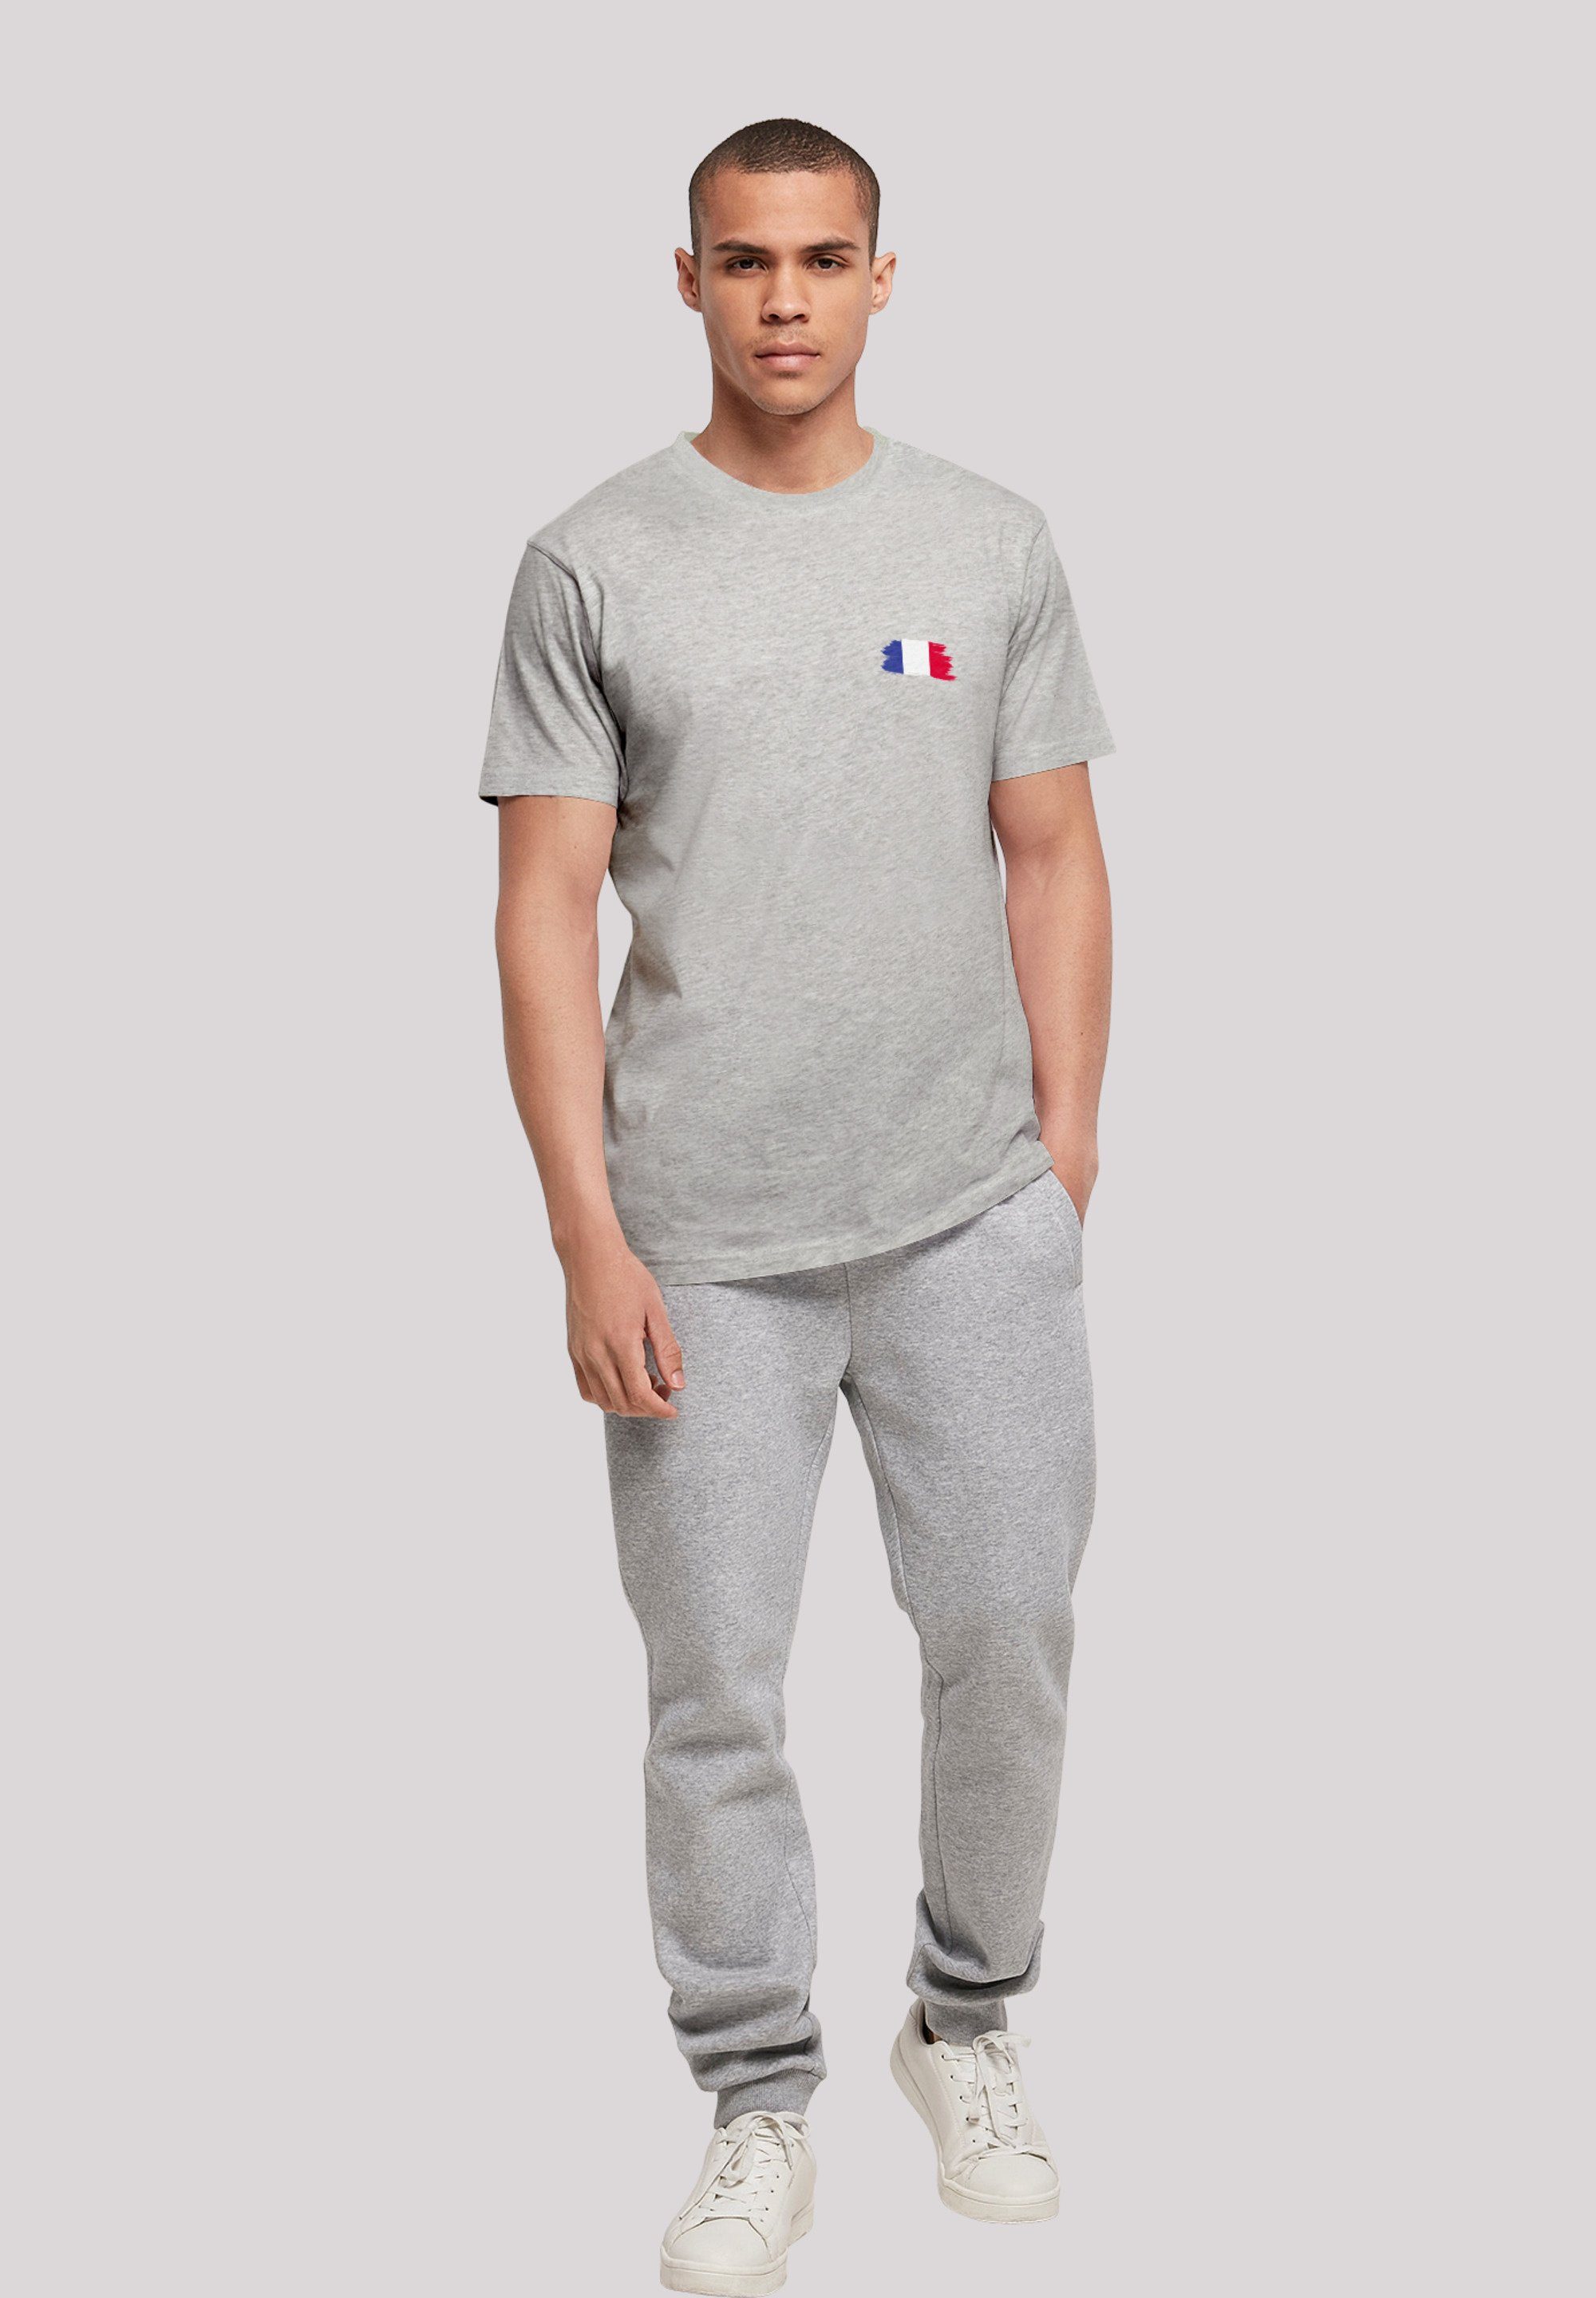 F4NT4STIC T-Shirt Frankreich Print heather grey Flagge France